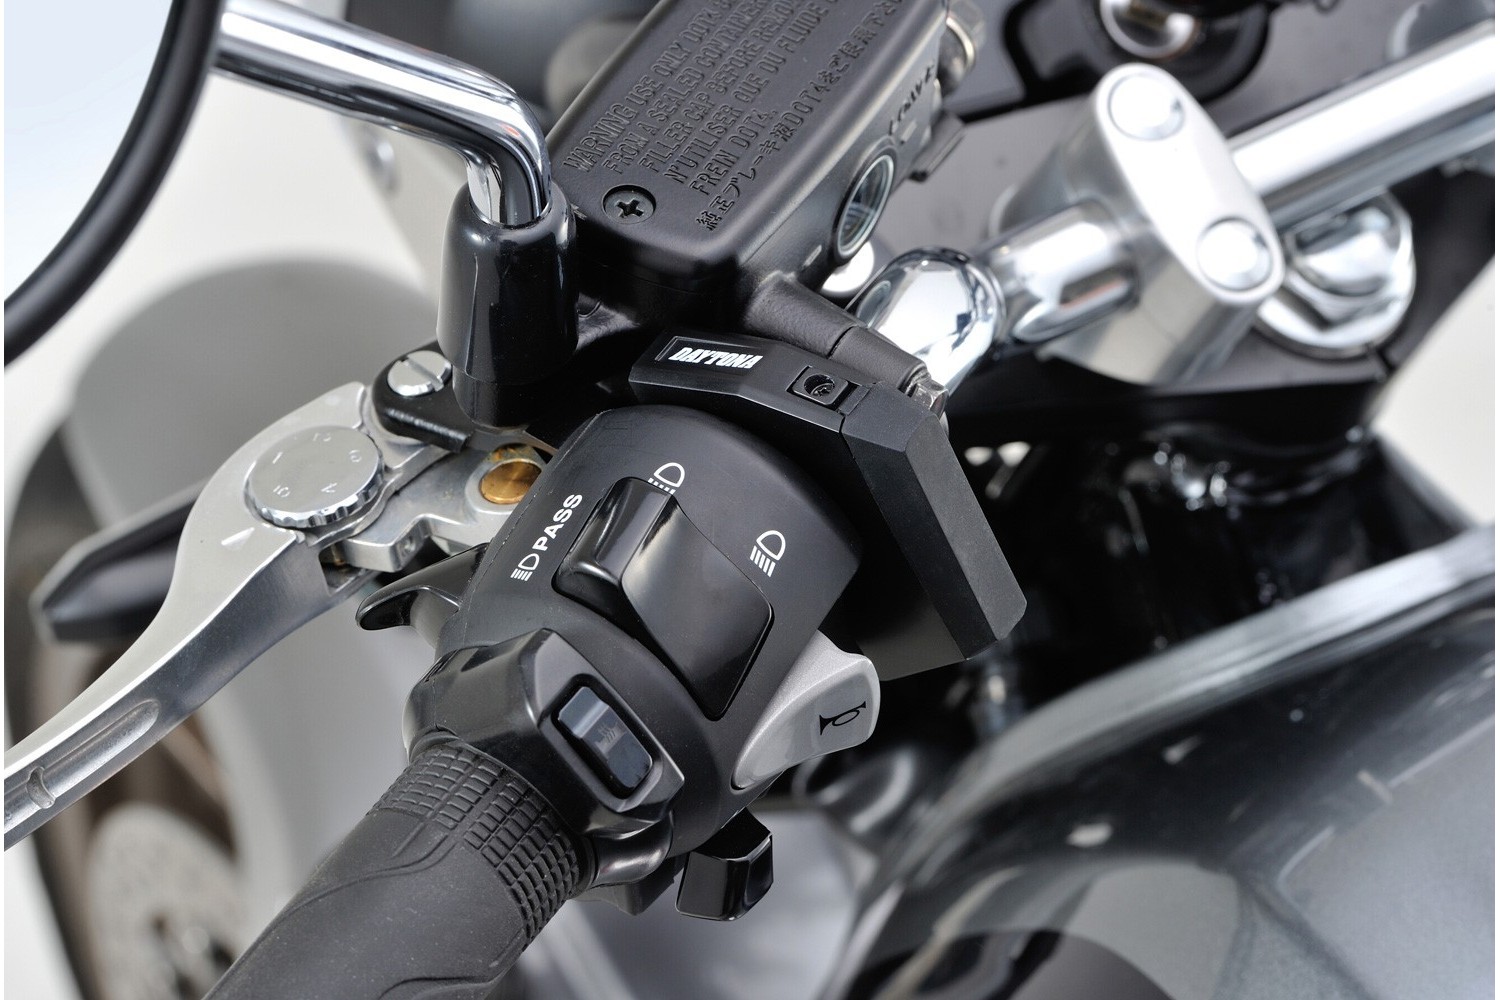 Motorrad USB Steckdose – Varianten und Installation